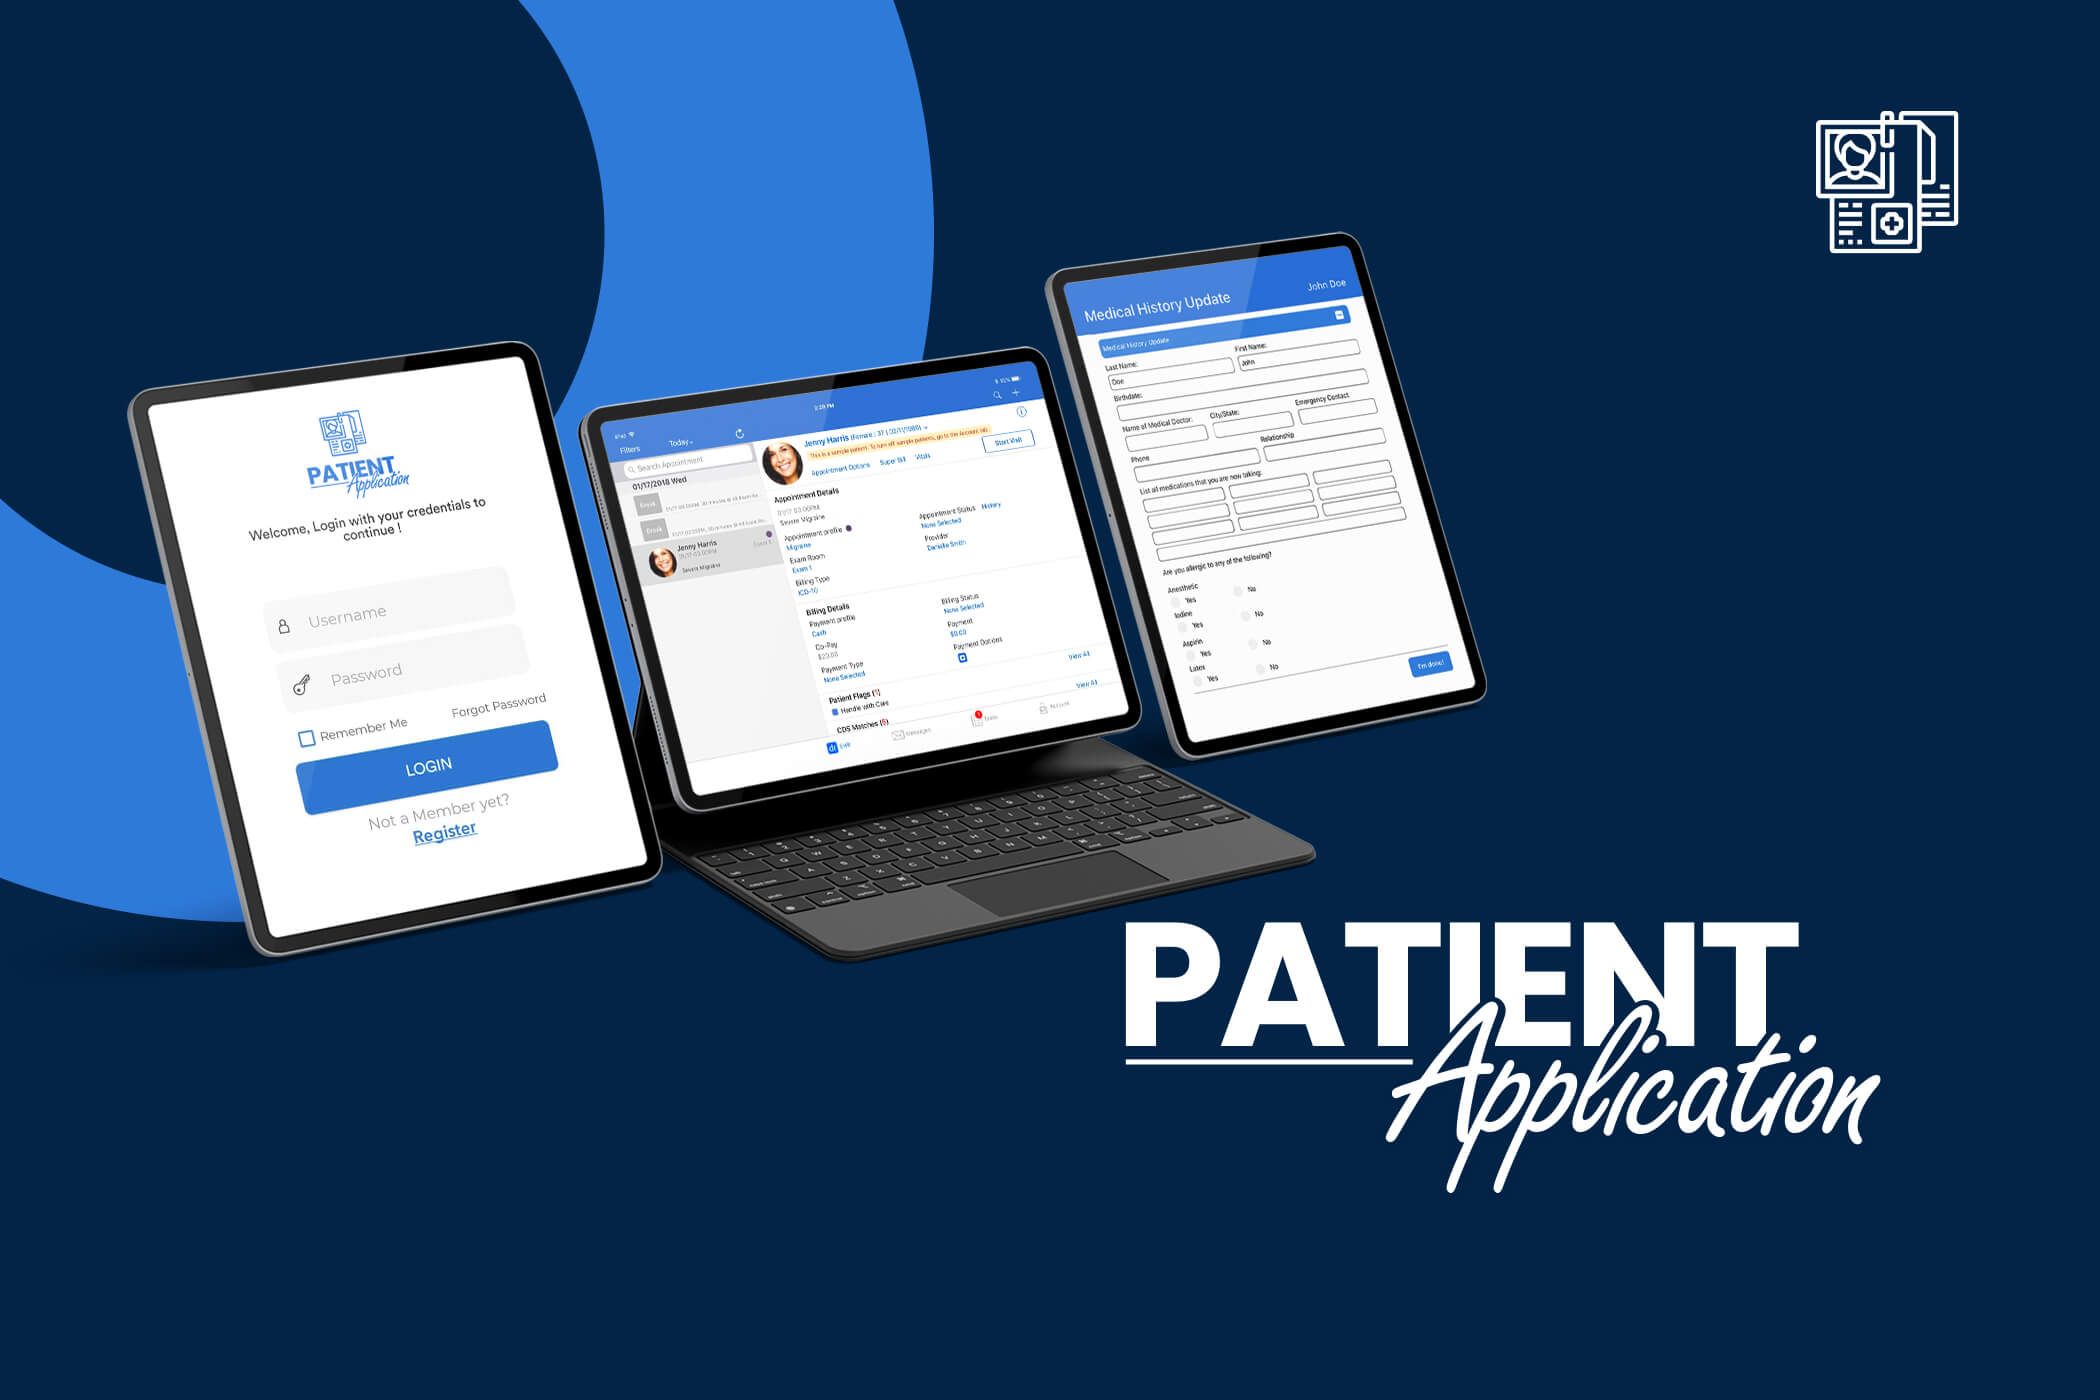 Patient Application (Patient Registration App)